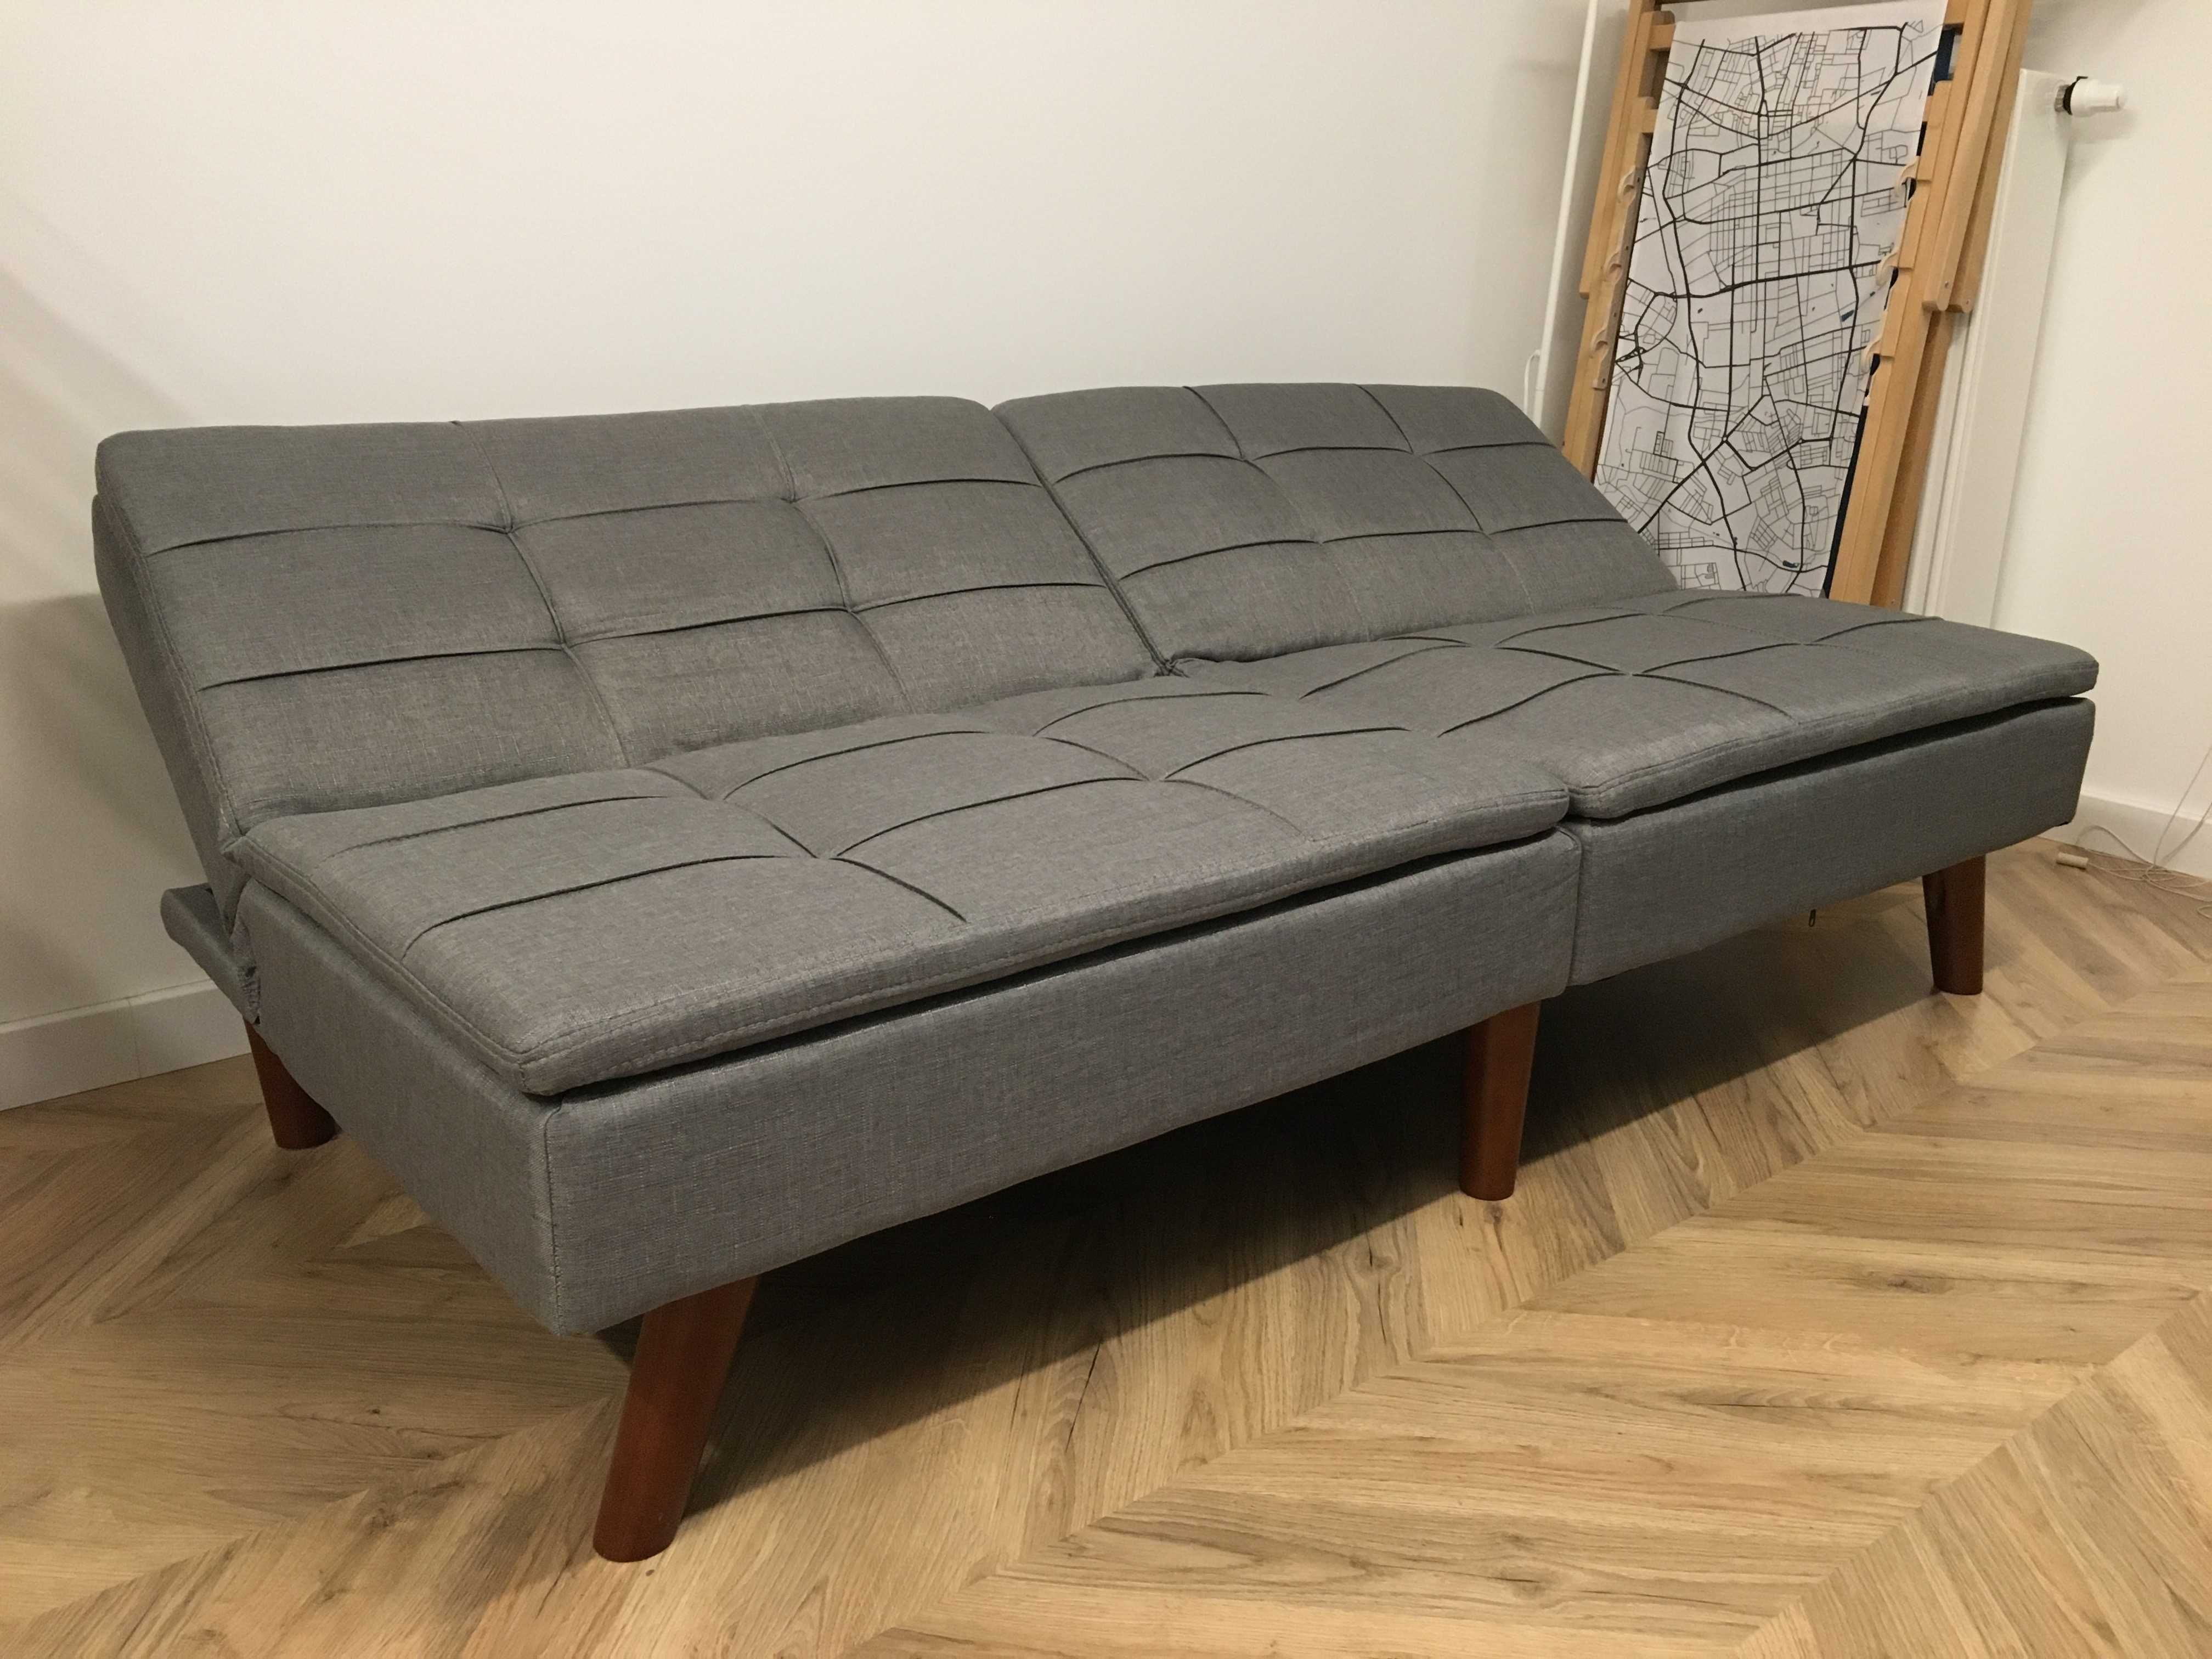 Sofa rozkładana szara RONNE, w stylu skandynawskim